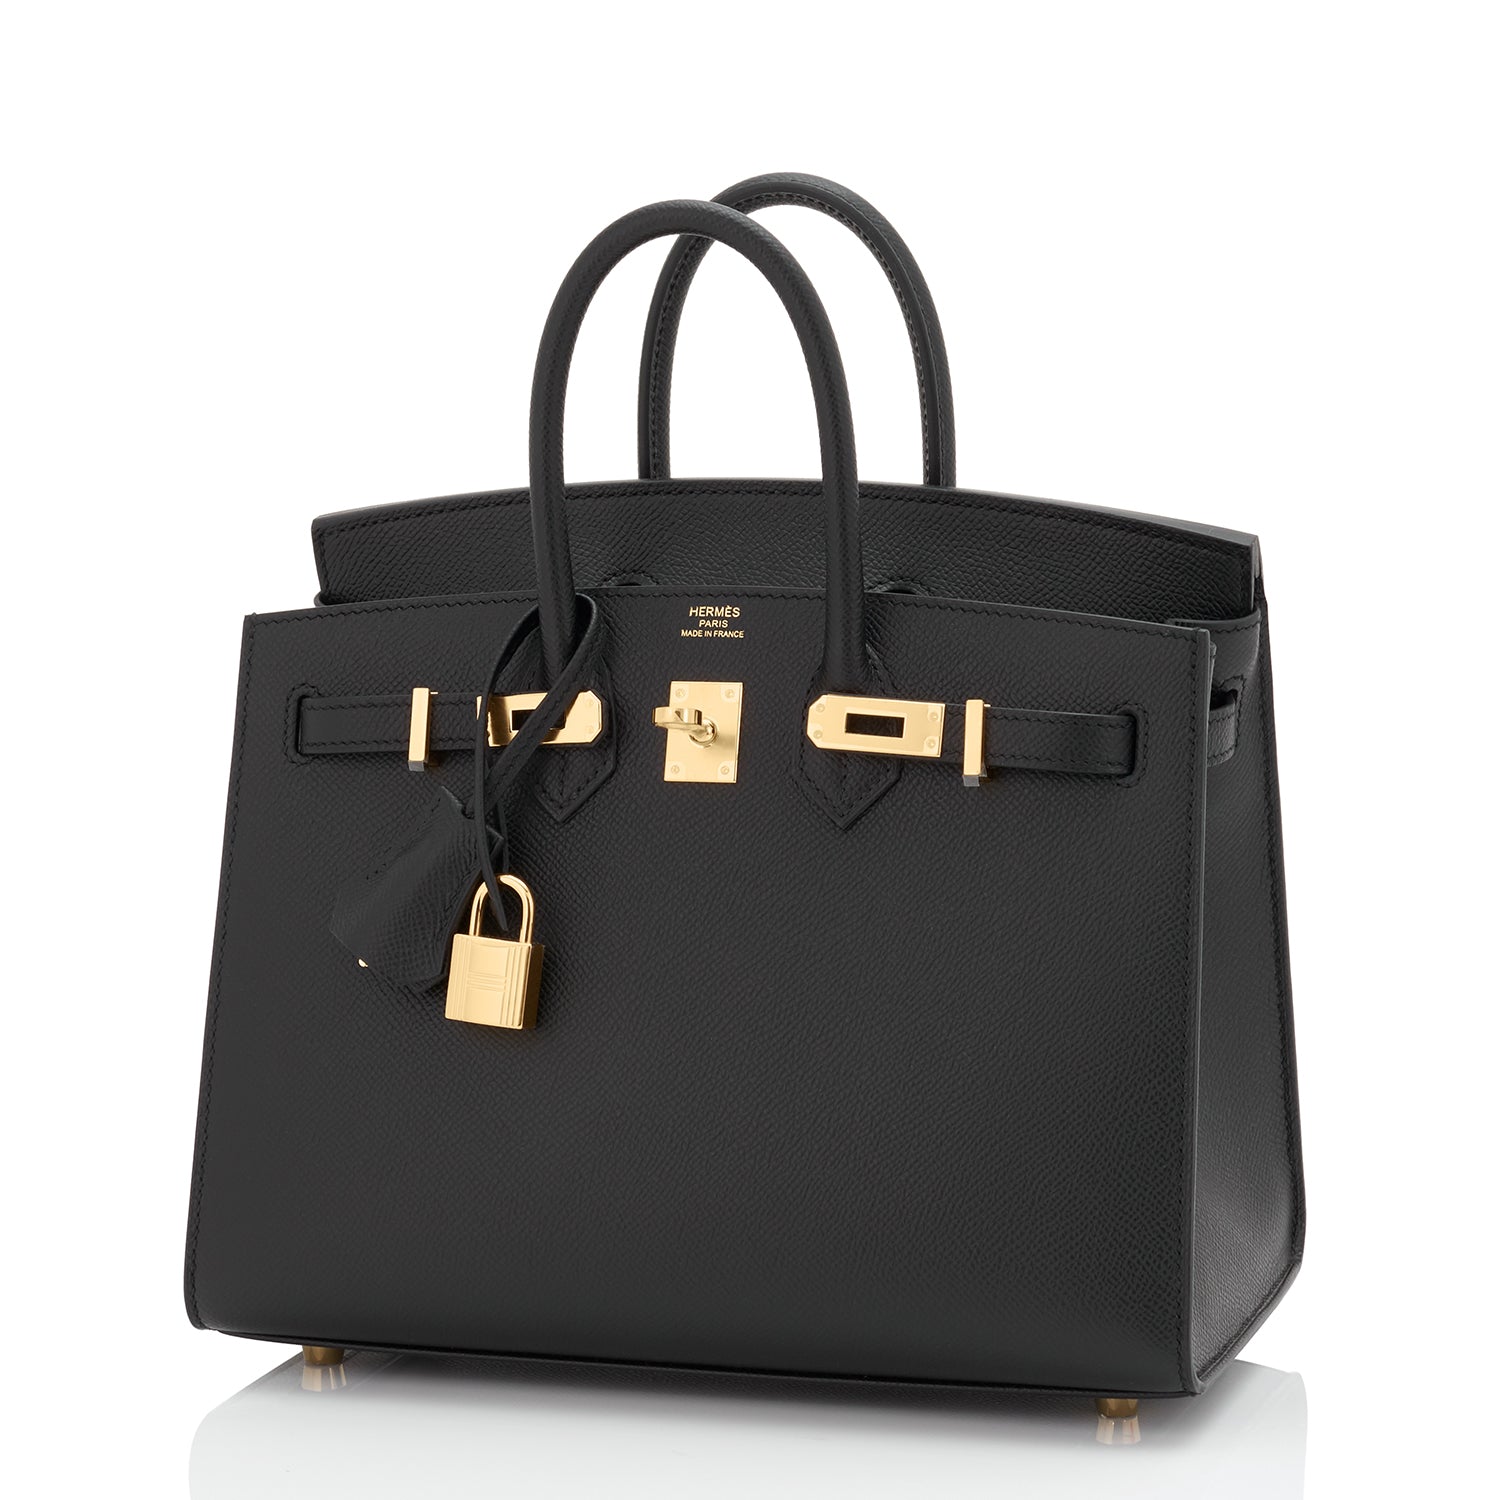 🗝️ Hermès 25cm Birkin Gris Tourterelle Togo Leather Gold Hardware  #priveporter #hermes #birkin #birkin25 #gristourterelle